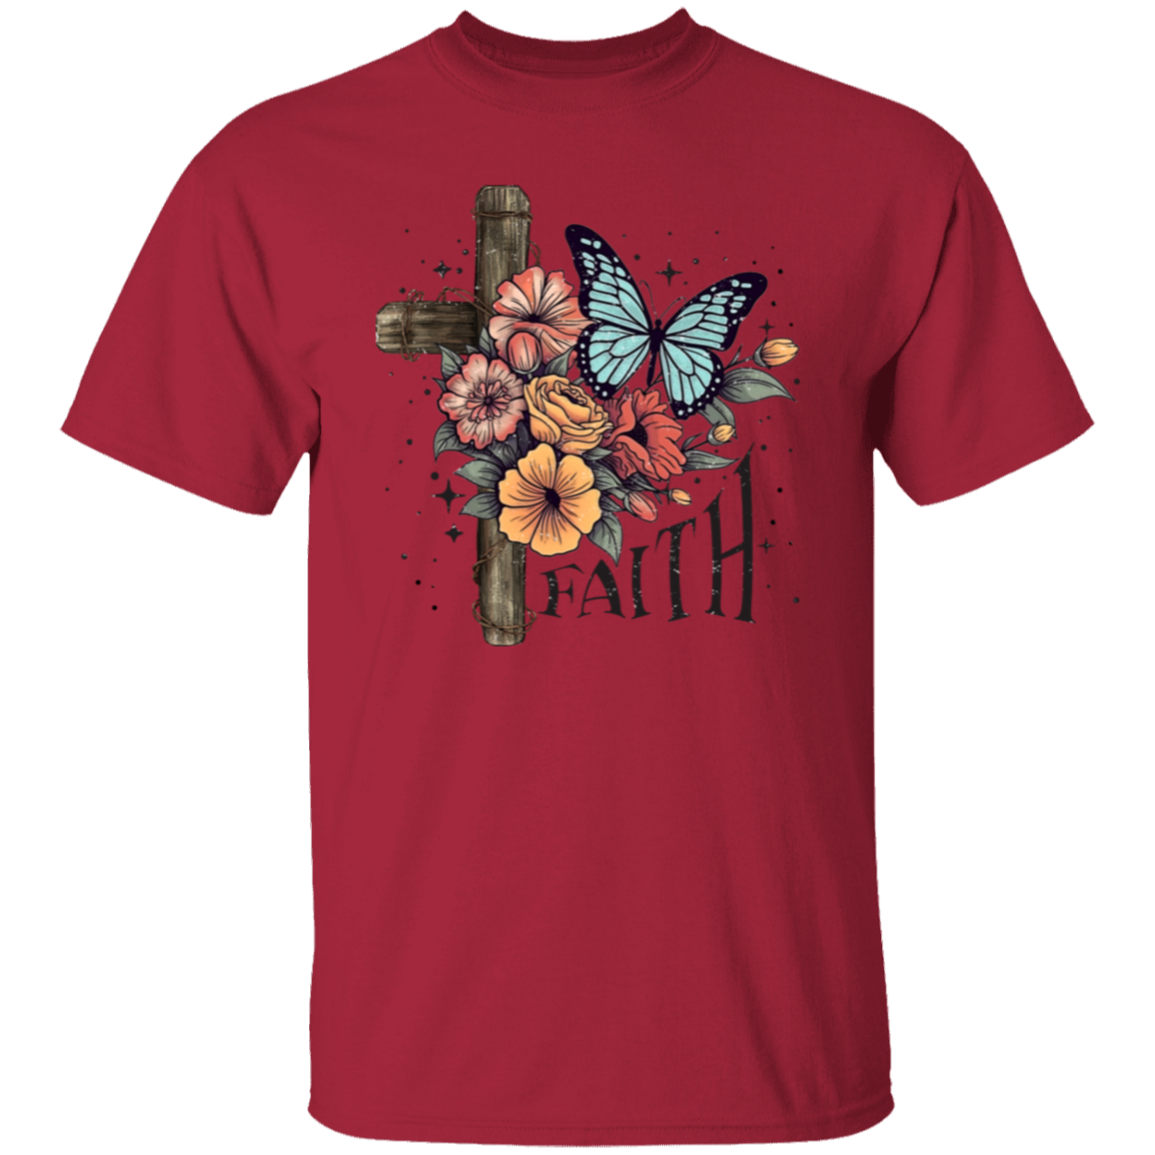 Faith | Cross & Flowers | T-Shirt